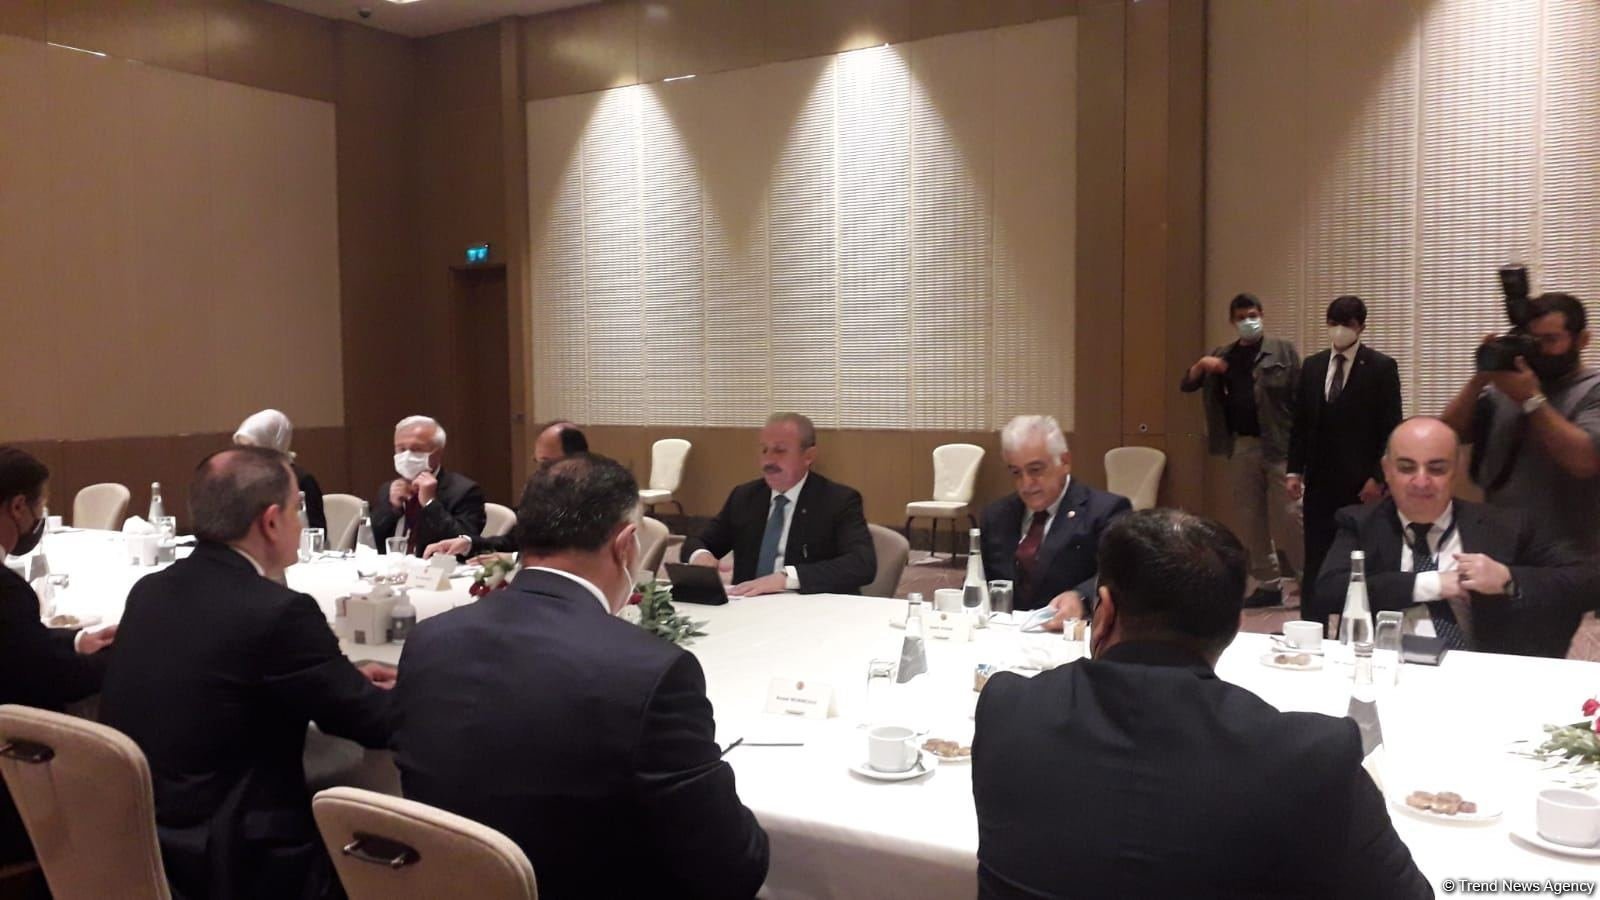 Baku Declaration to strengthen Azerbaijani-Turkish relations - Azerbaijani FM